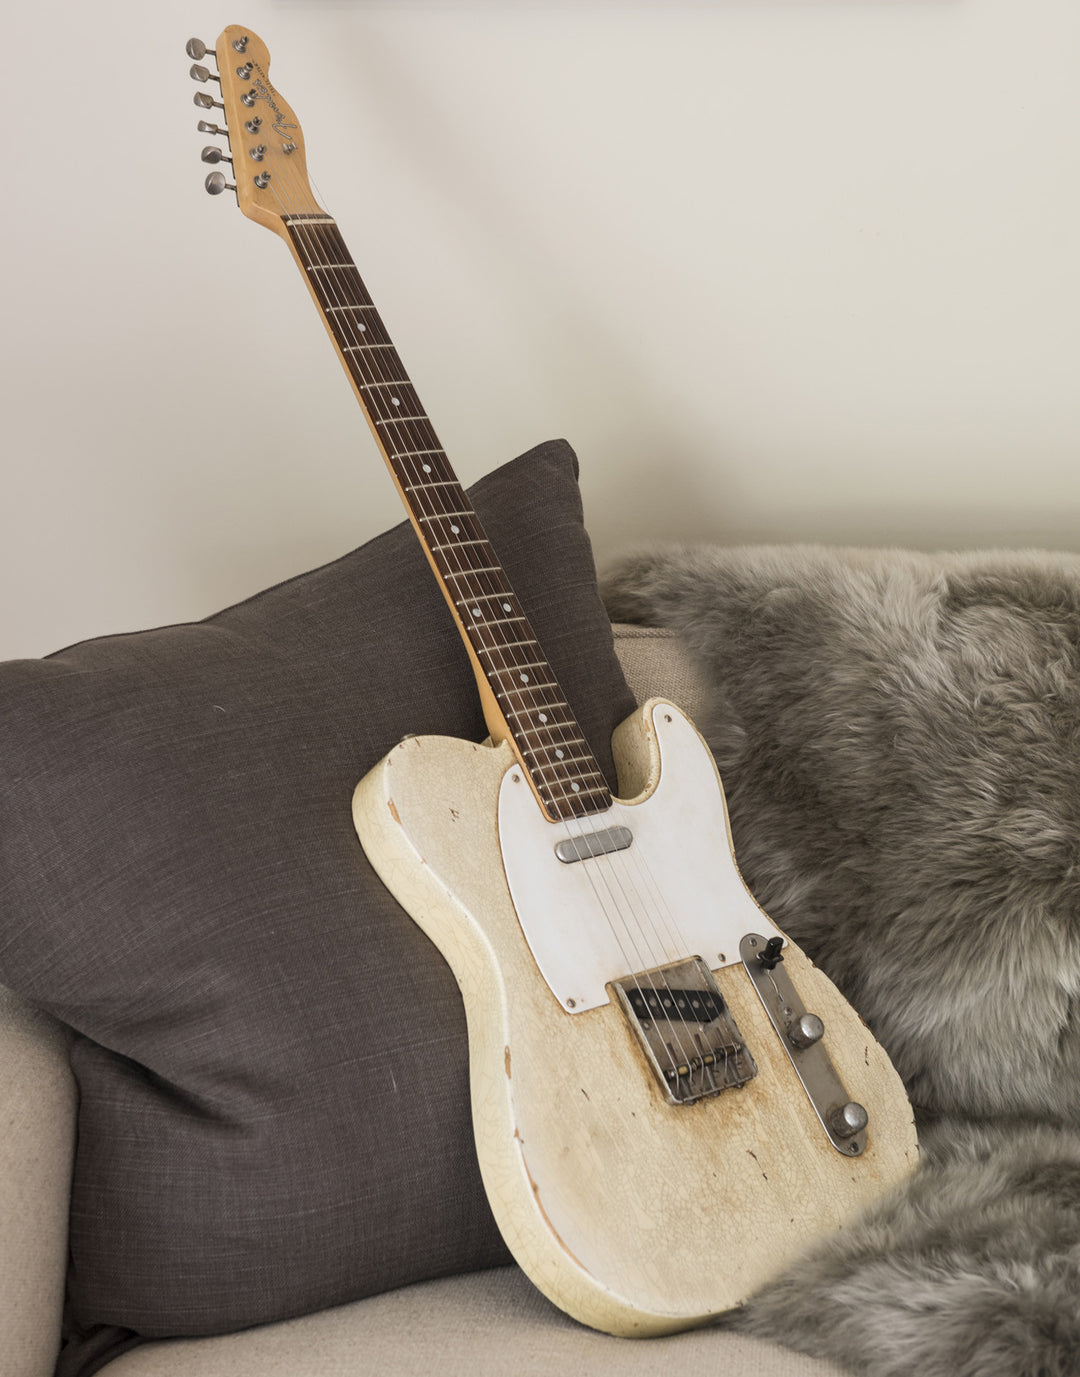 Fender Telecaster Replica